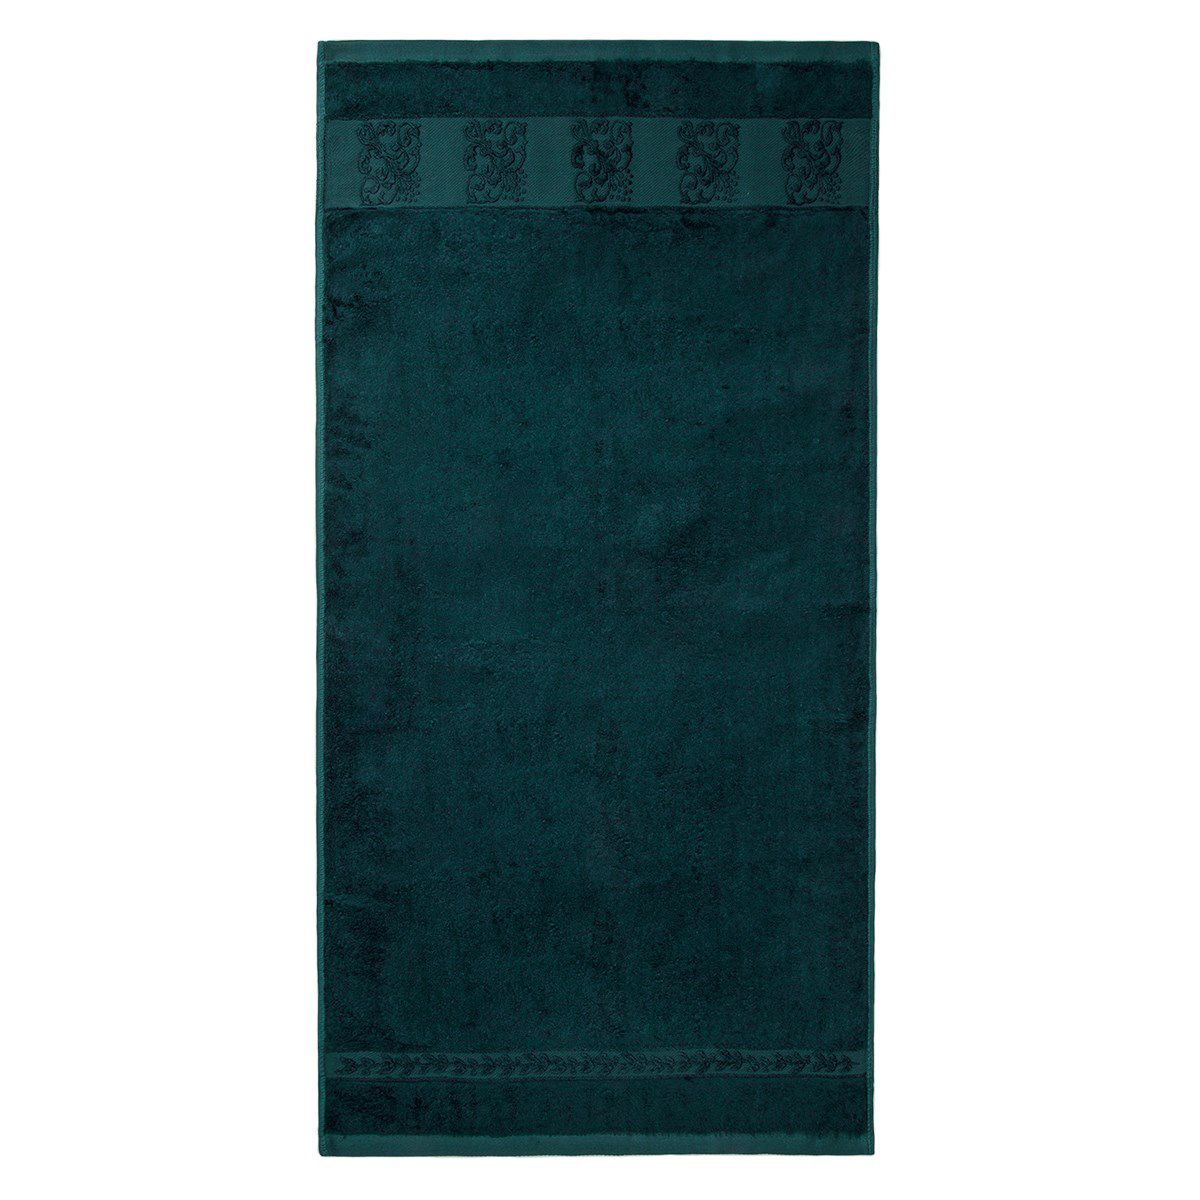 Jahu ručník bambus Ankara tmavě modrá, 50 x 100 cm - 4home.cz